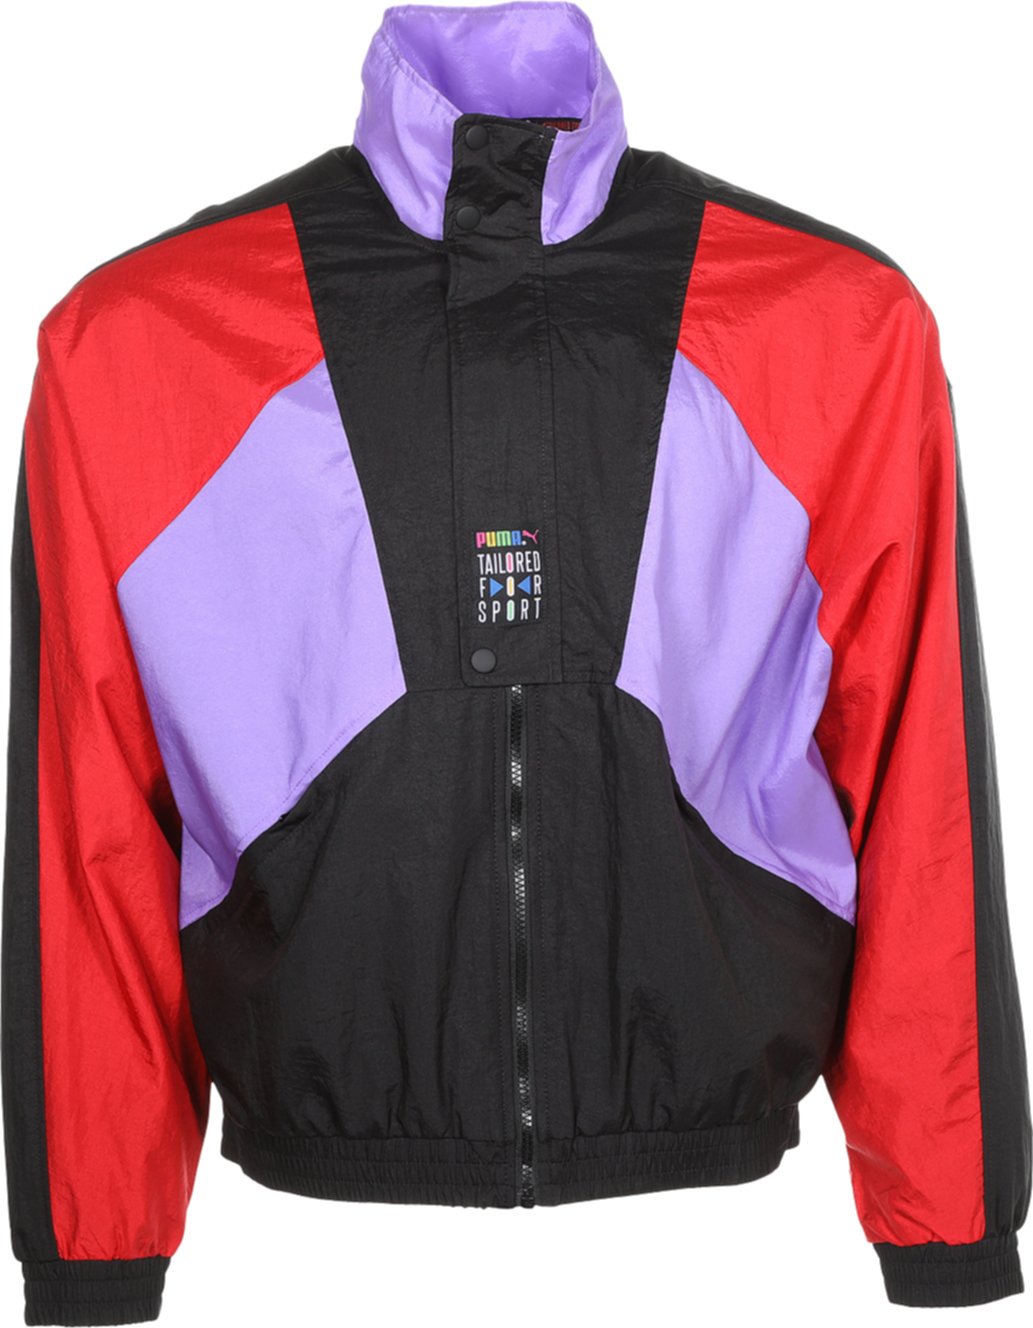 Спортивная куртка Tailored For Sport OG PUMA